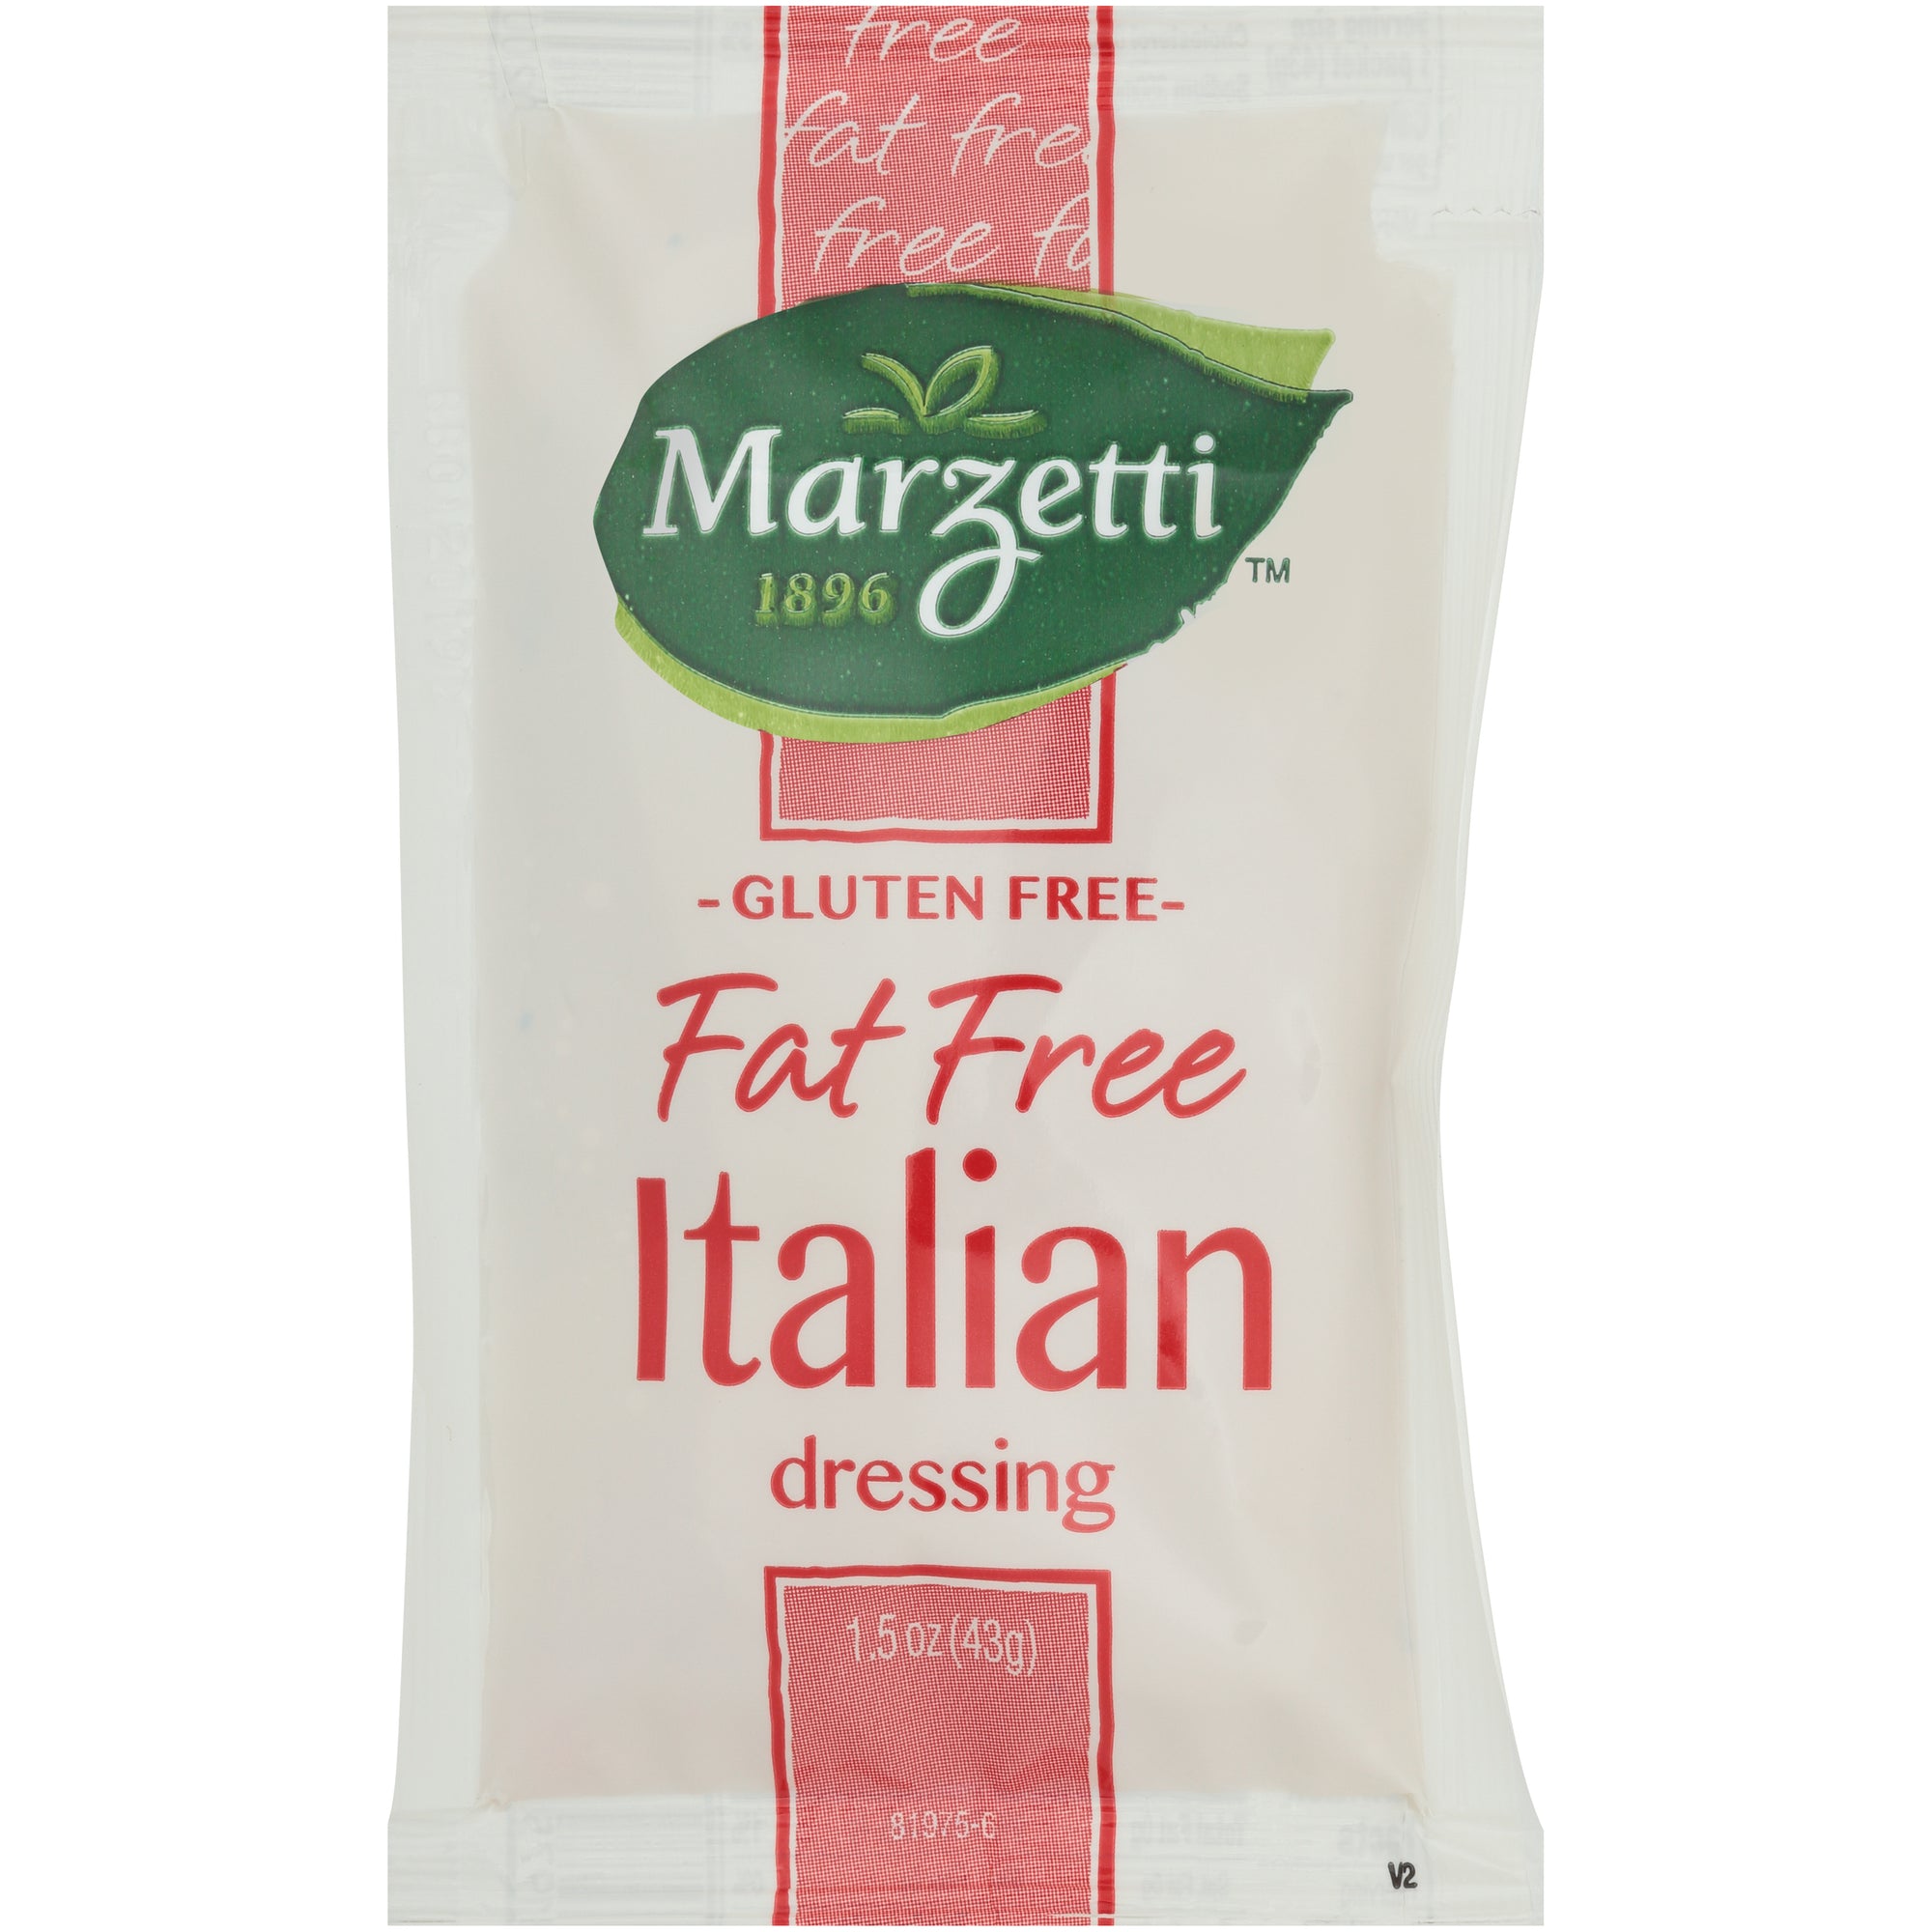 MARZETTI FAT FREE ITALIAN DRESSING, 60 - 1.5 OZ